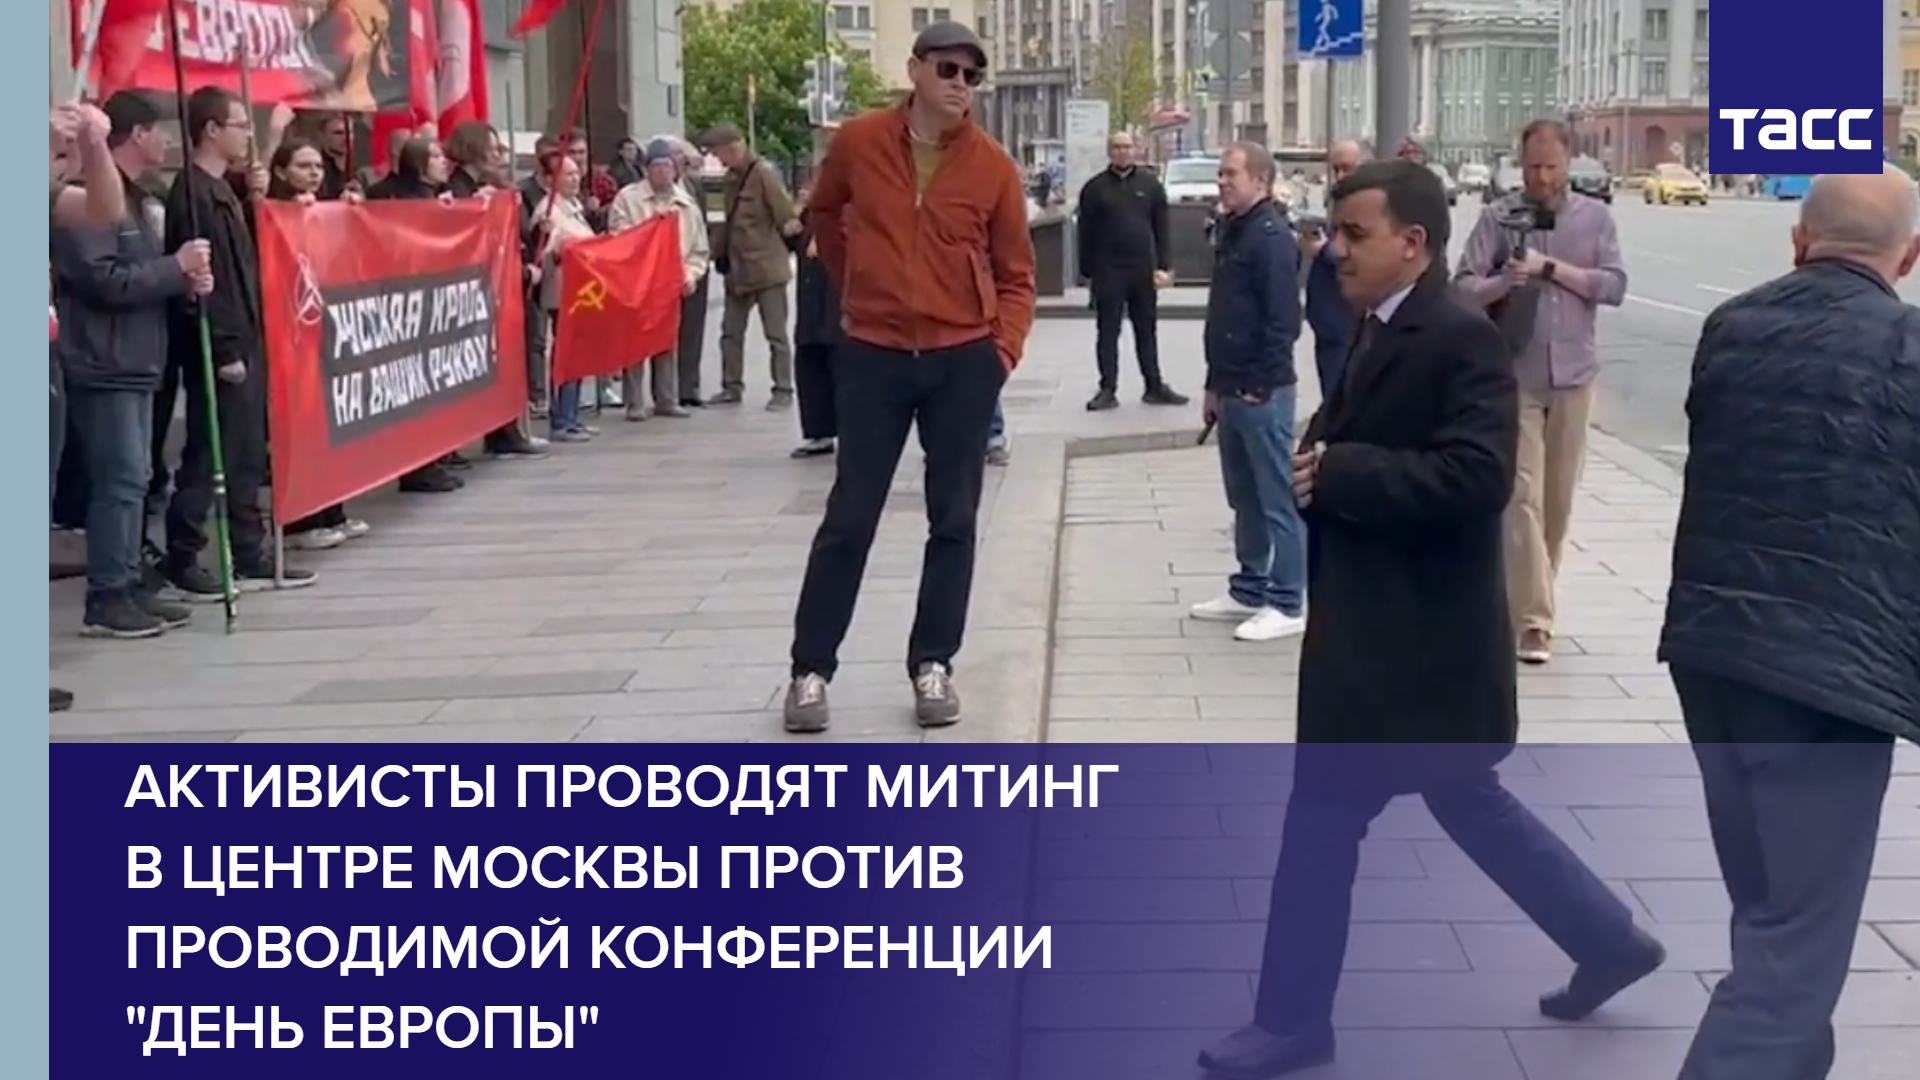 Активисты проводят митинг в самом центре Москвы против проводимой конференции "День Европы"